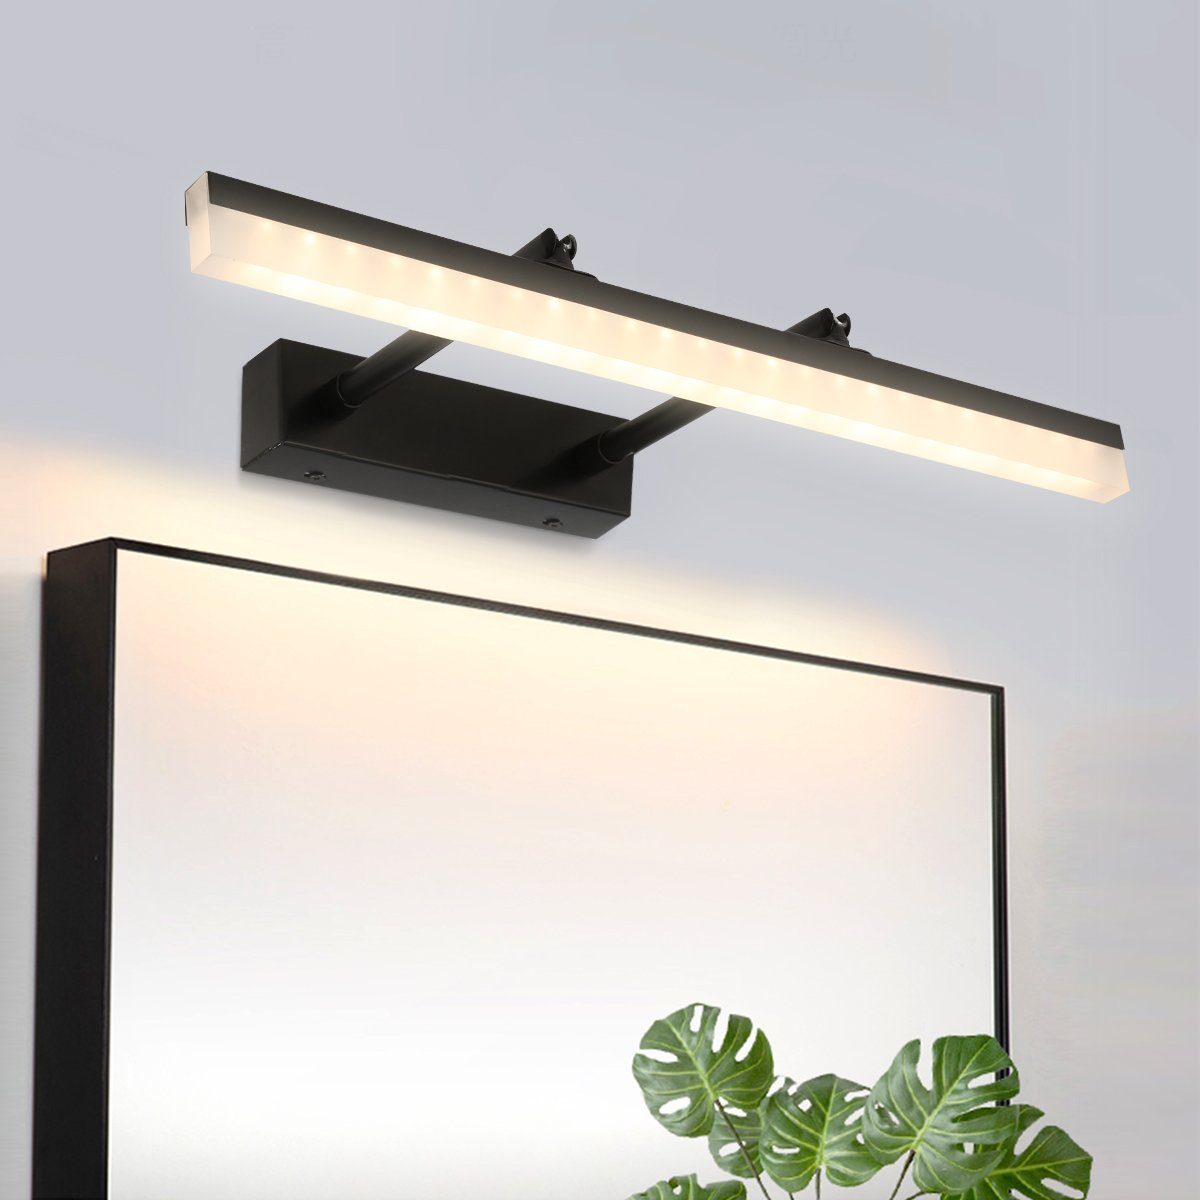 LETGOSPT LED Spiegelleuchte 9W Edelstahl Wandleuchte Spiegellampe aus 40cm